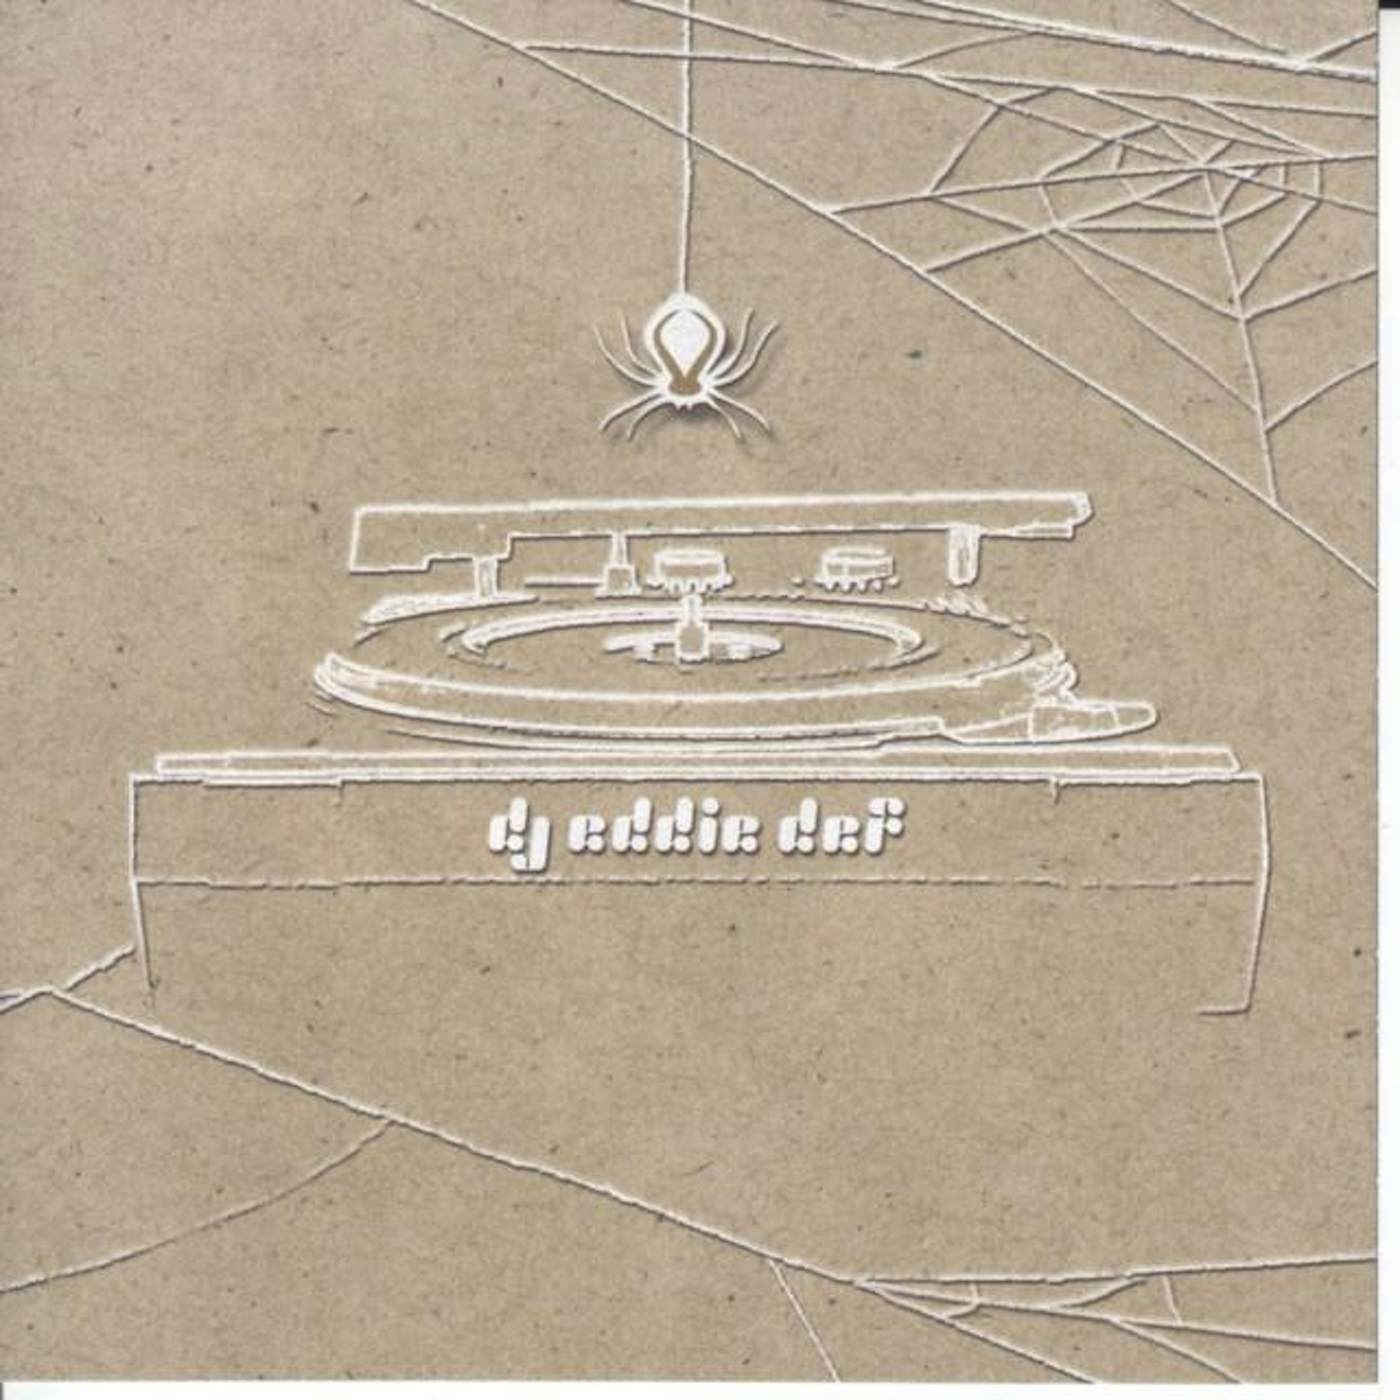 DJ Eddie Def